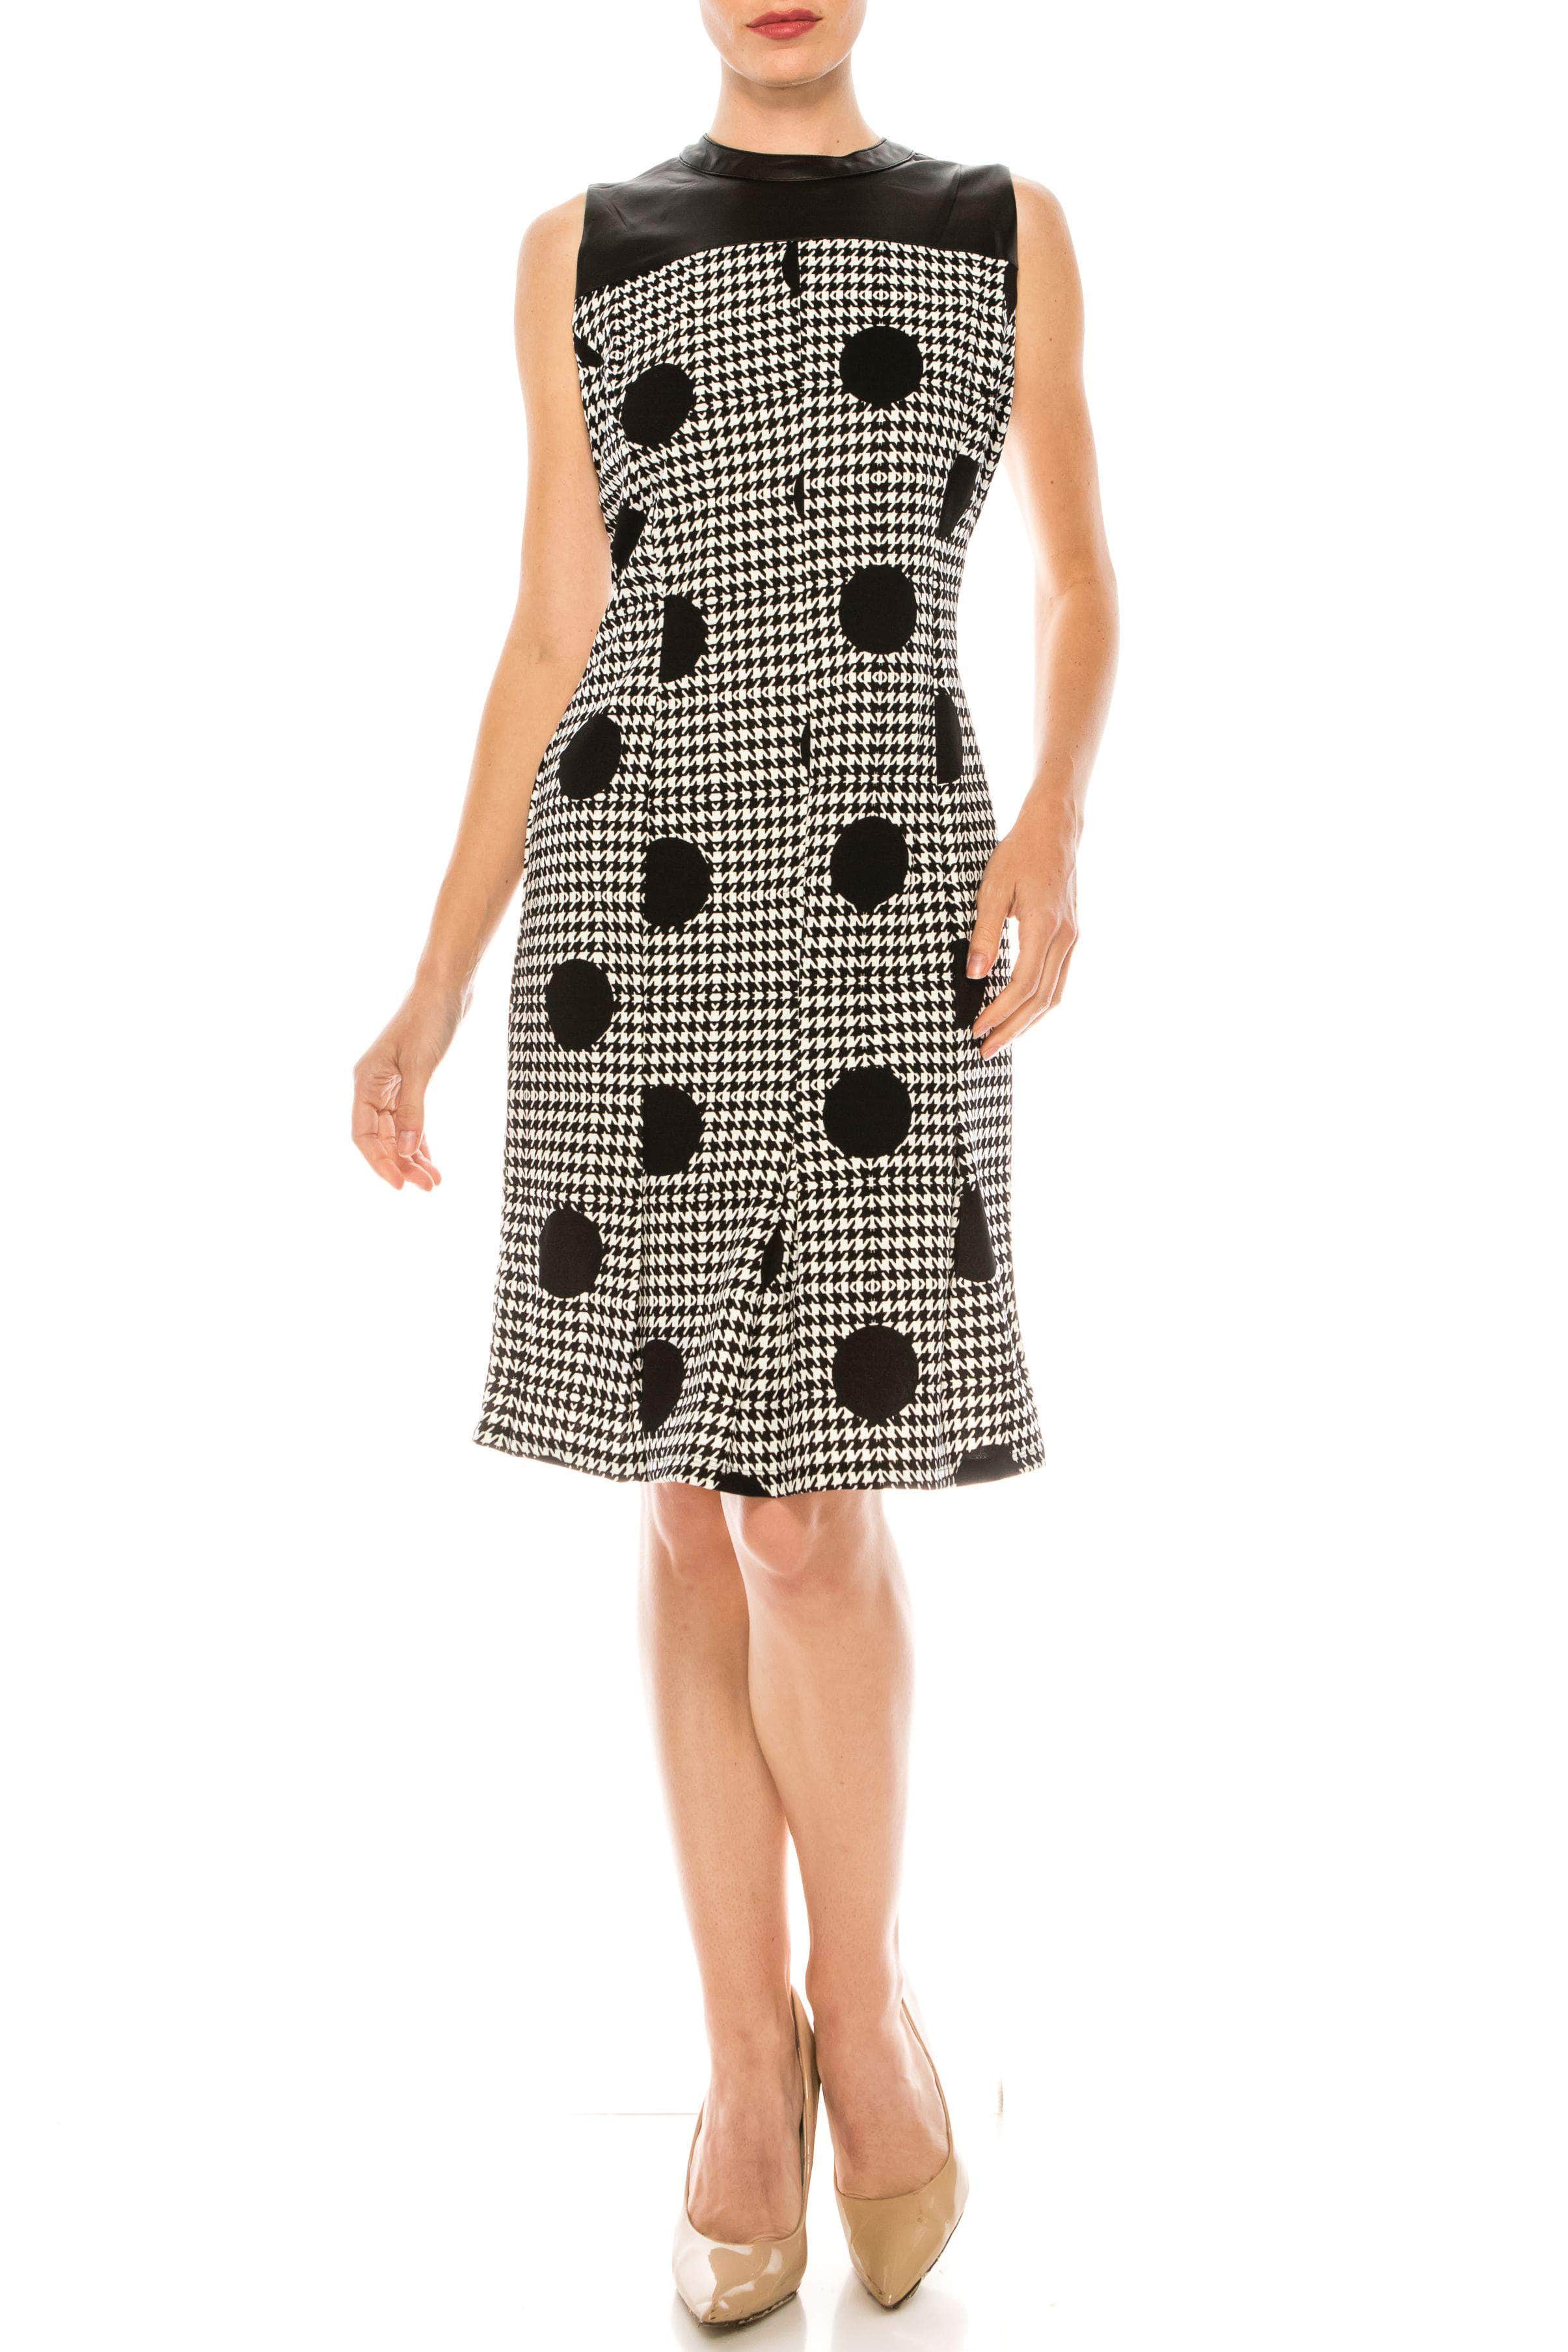 Image of ILE Clothing SCP11441145 - Sleeveless High Neck Short Dress